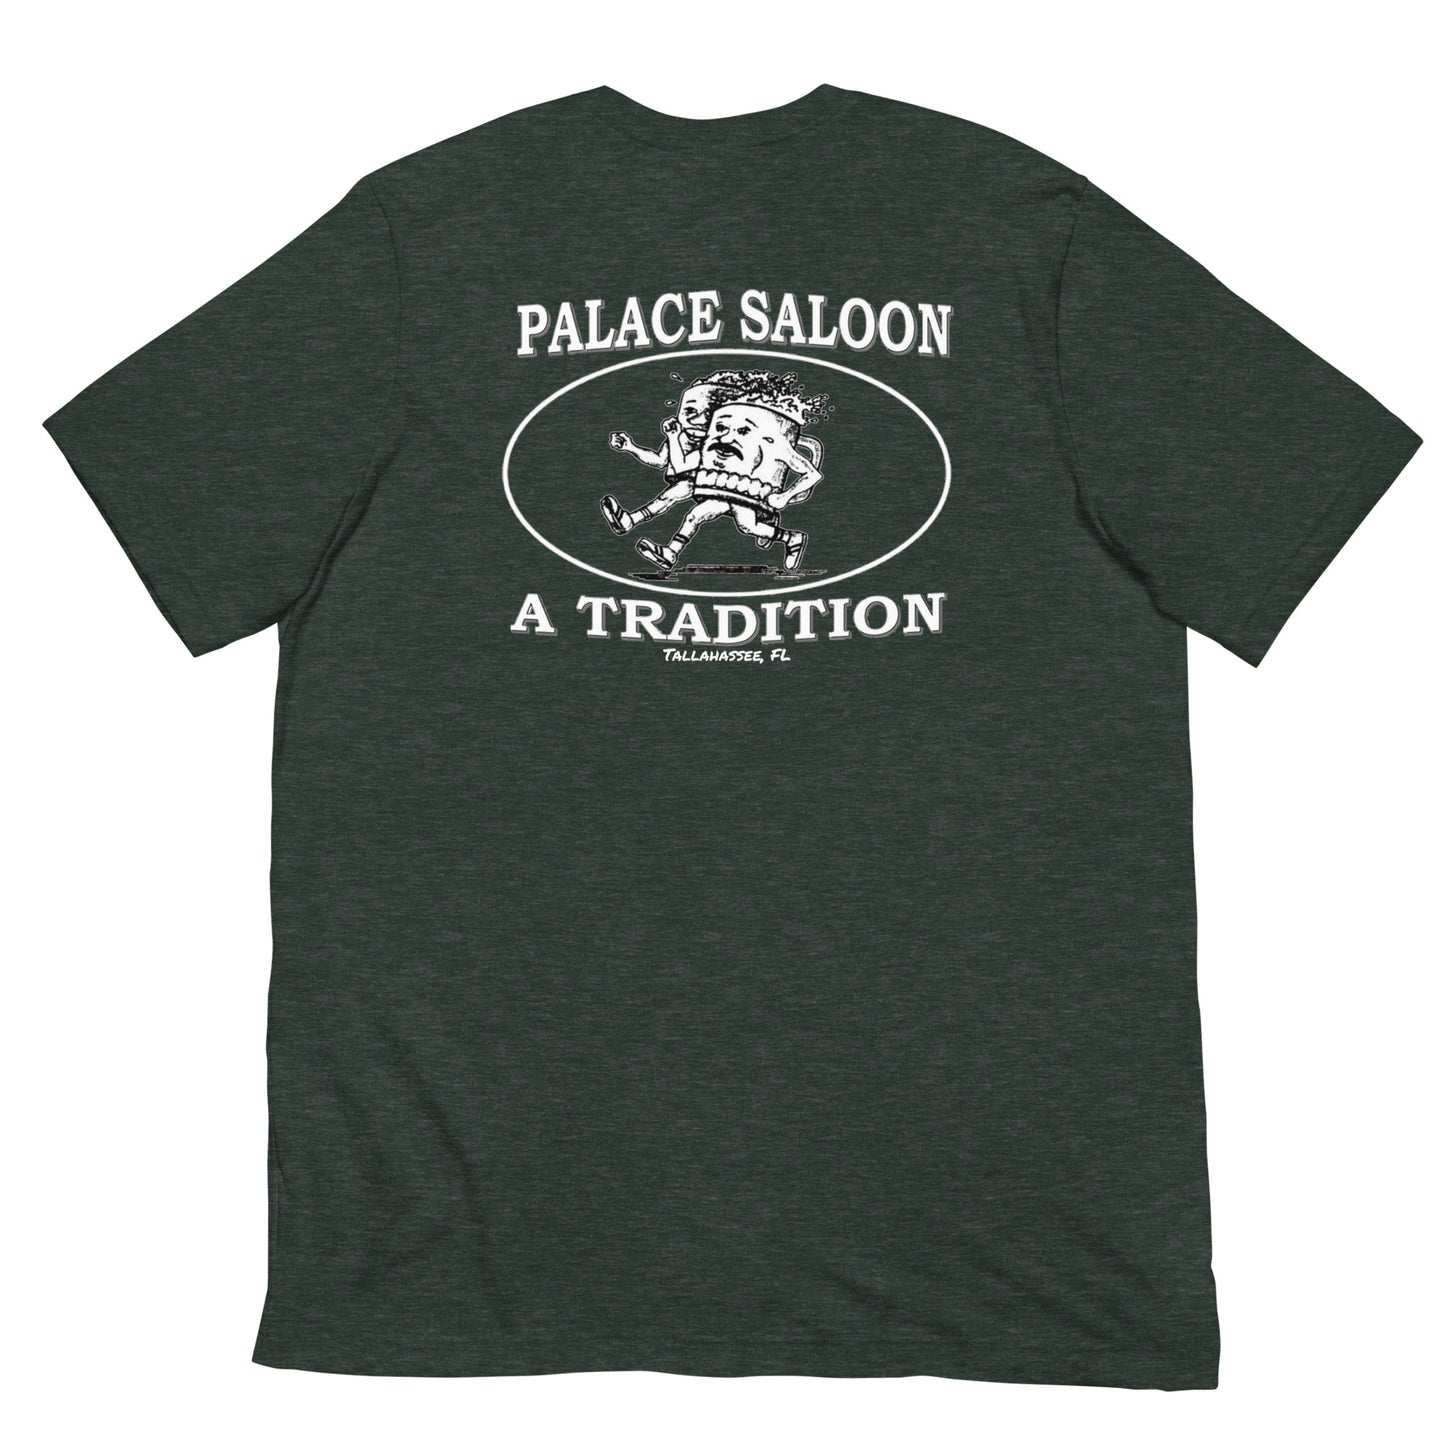 Palace Alumni Unisex t-shirt